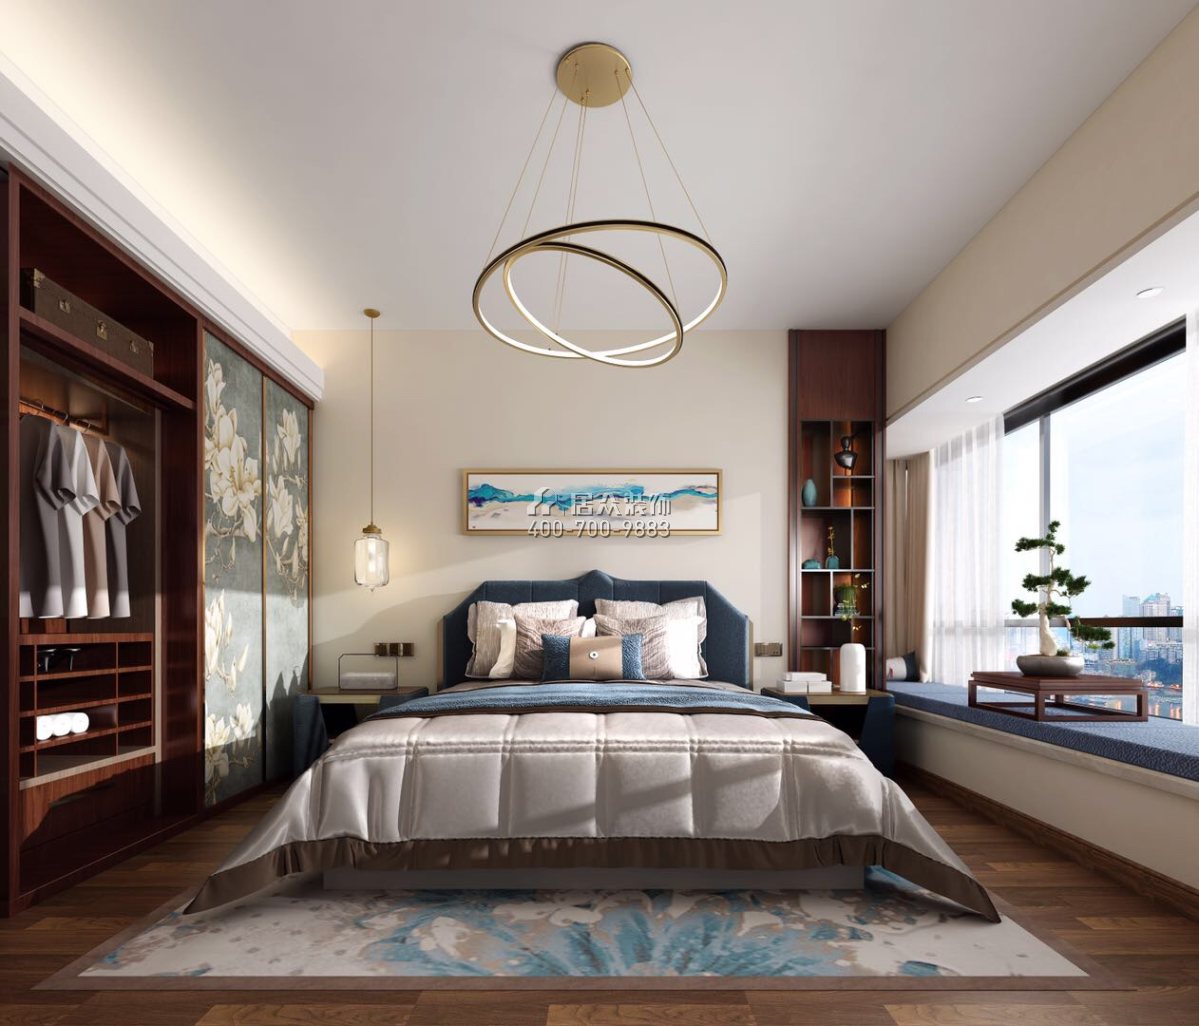 世荣作品壹号四期128平方米中式风格平层户型卧室装修效果图